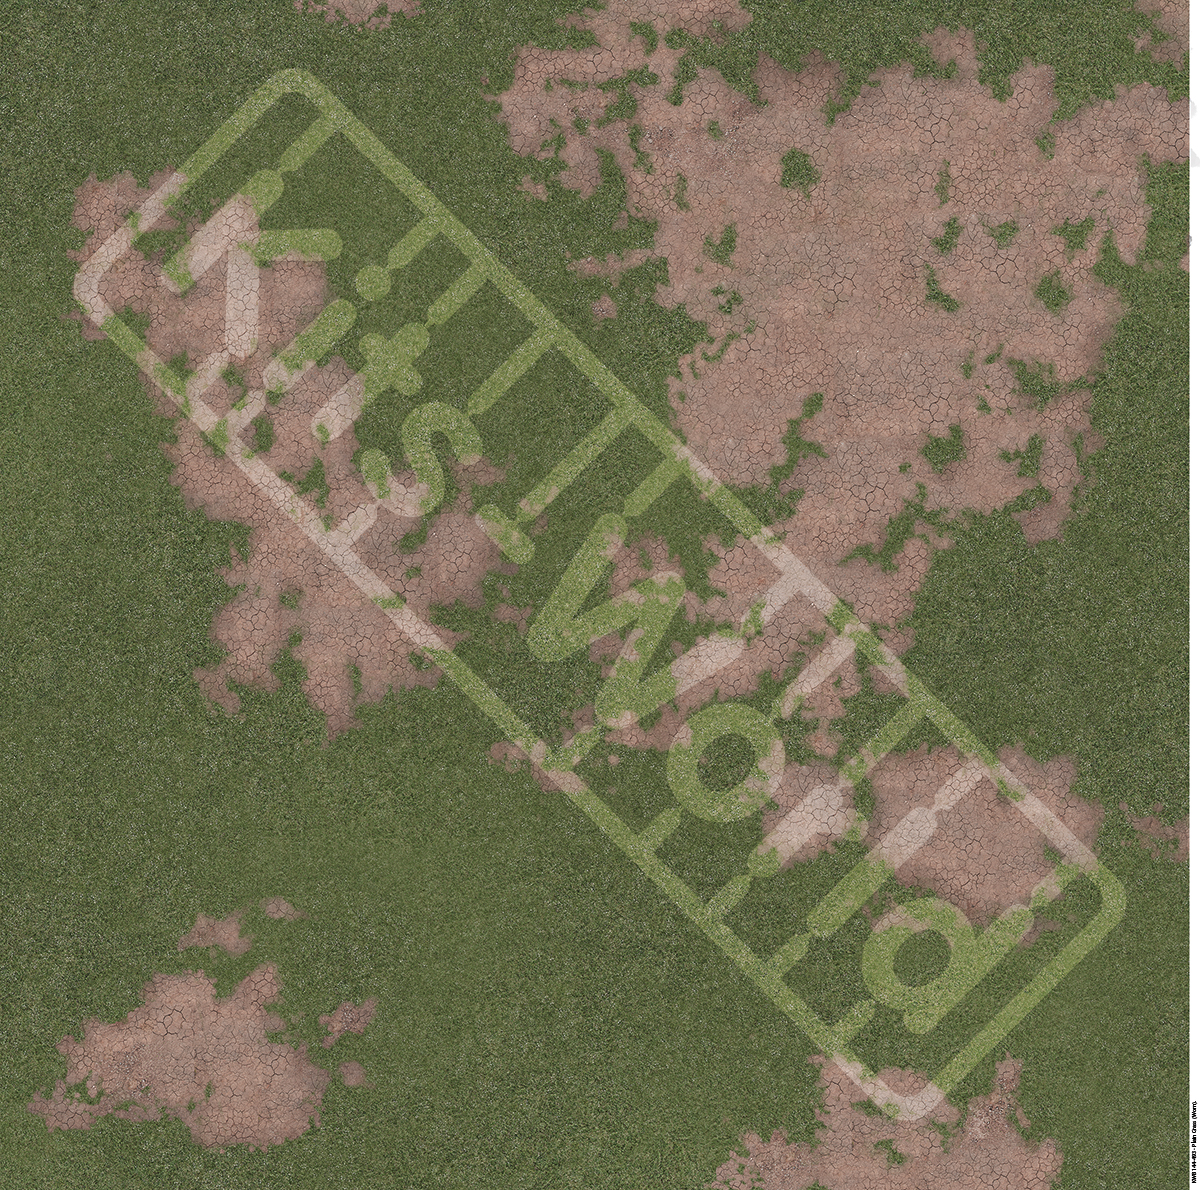 Kitsworld Diorama Adhesive Base 1:144th scale - Plain Grass- Worn KWB 144-493 Plain Grass- Worn 